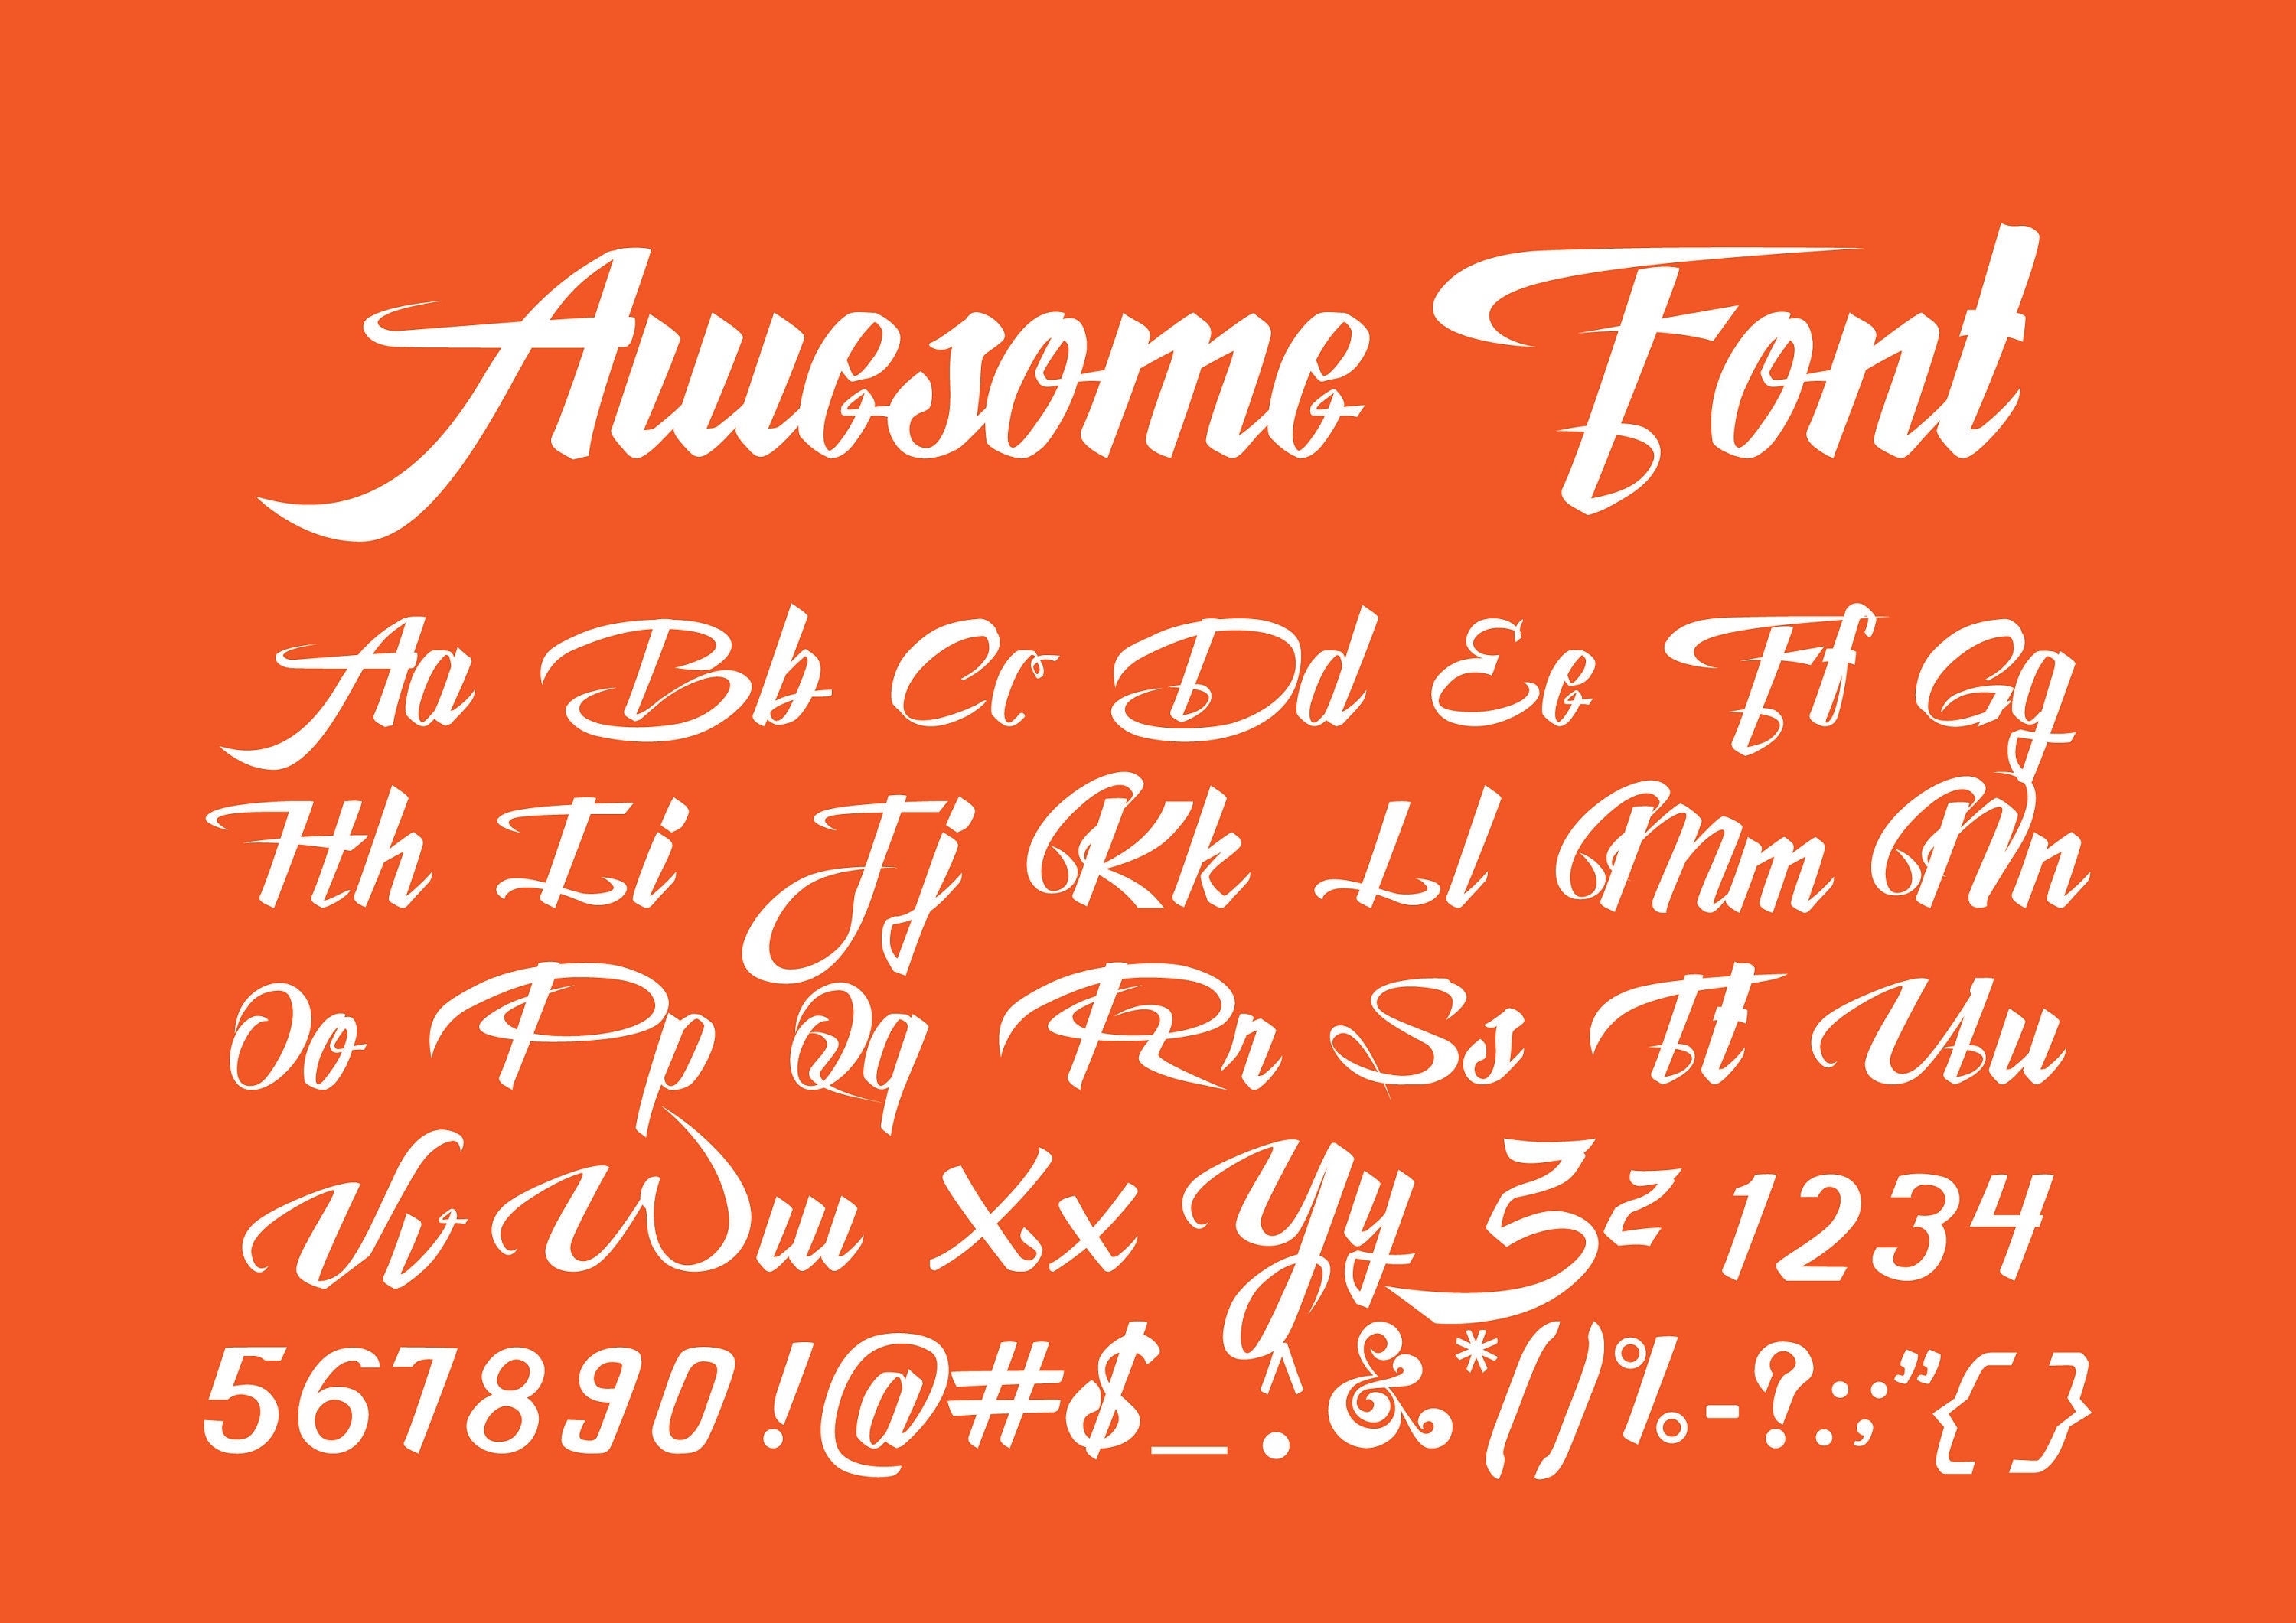 AWESOME FONT SVG Awesome Font Svg Digital Download for Etsy